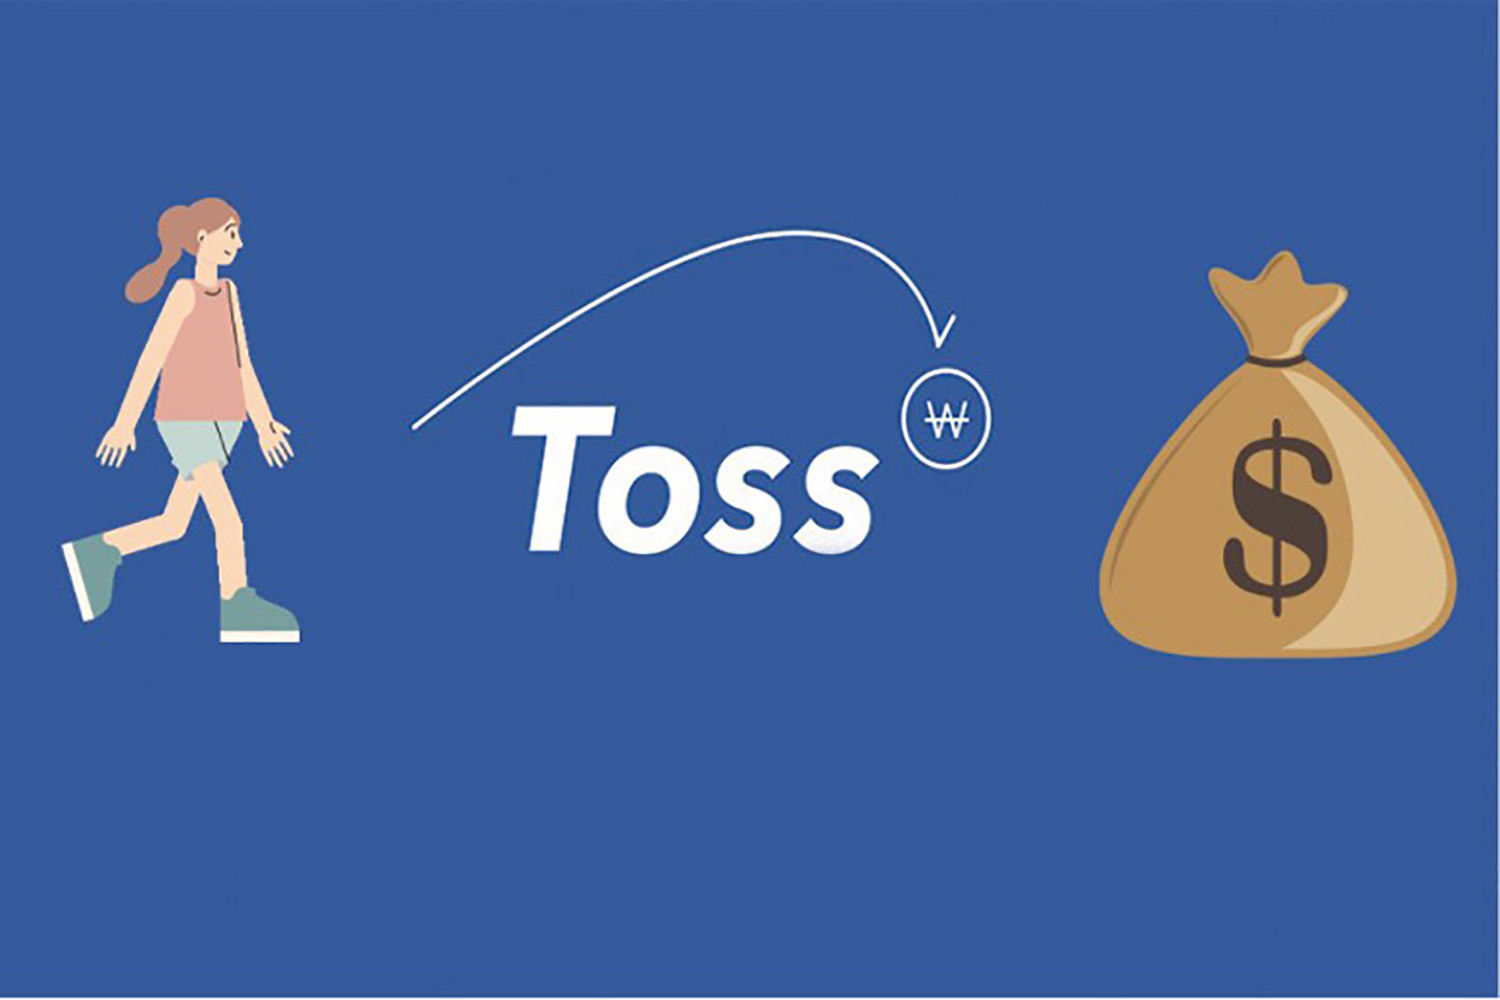 Toss - App đi bộ kiếm tiền online